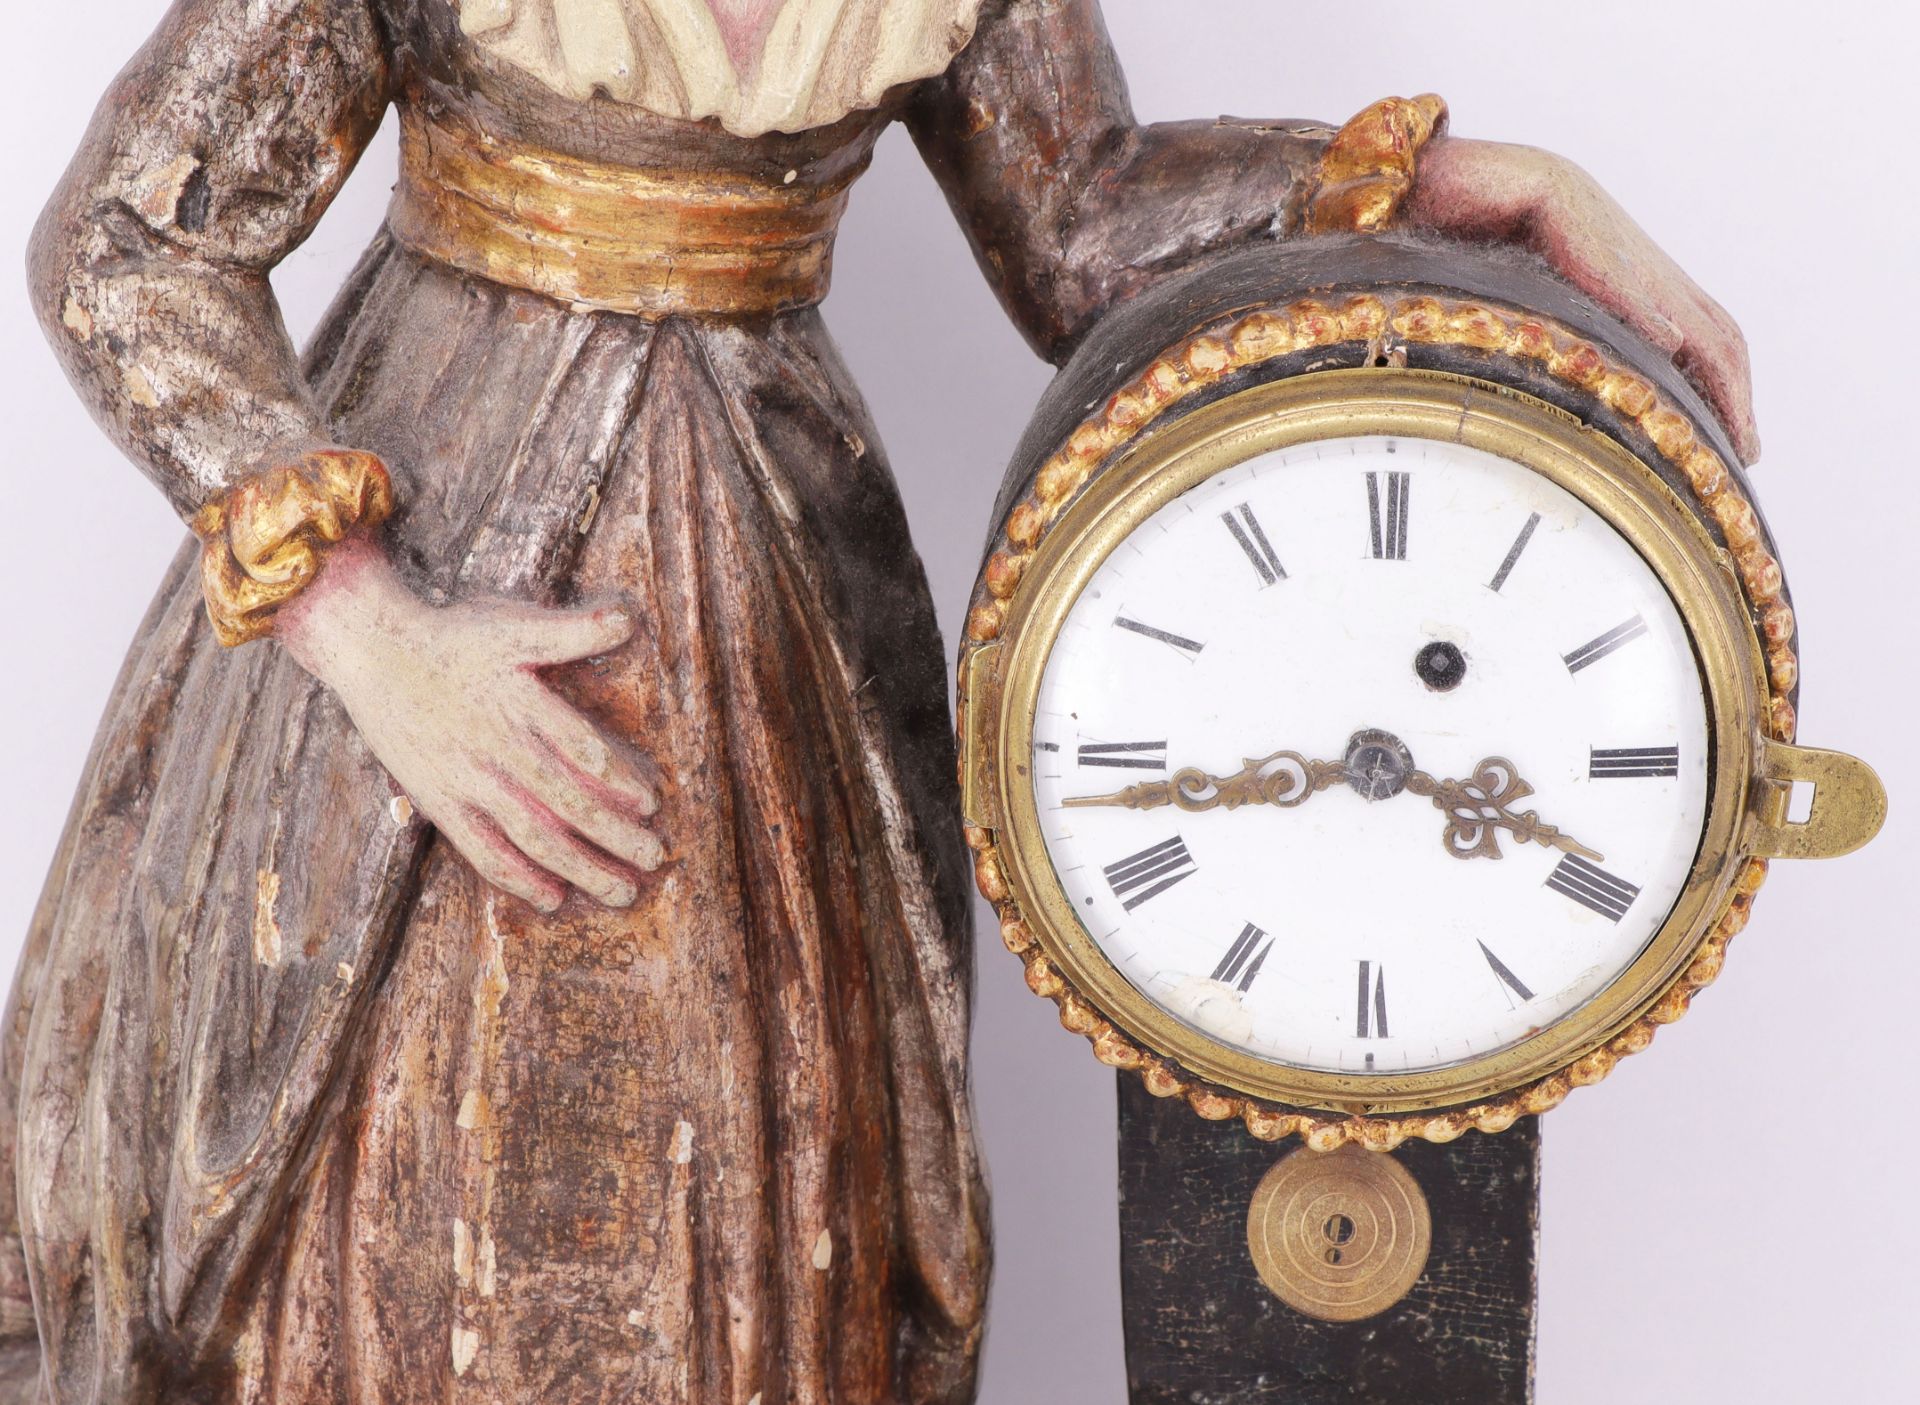 Uhrenweibchen, Mitte 19. Jh., Holz, farbig gefasst: Frauenfigur neben Uhr stehend, H. 37 cm. Uhr mit - Bild 2 aus 4